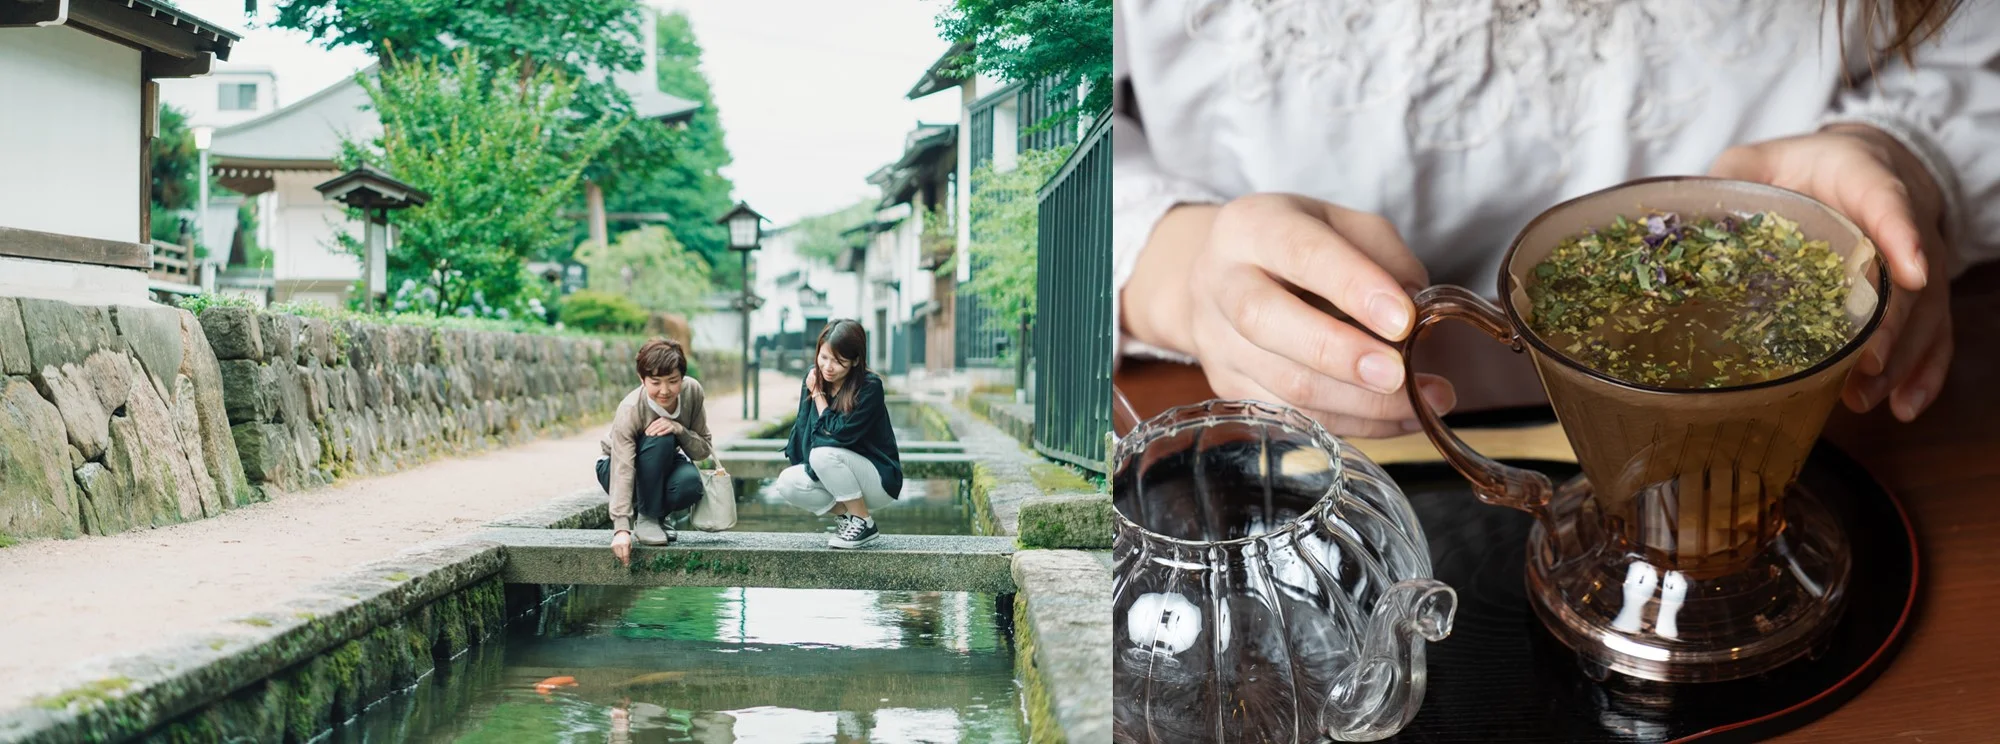 Learn About Medicinal Herbs on a Tour of Hida-Furukawa, Gifu